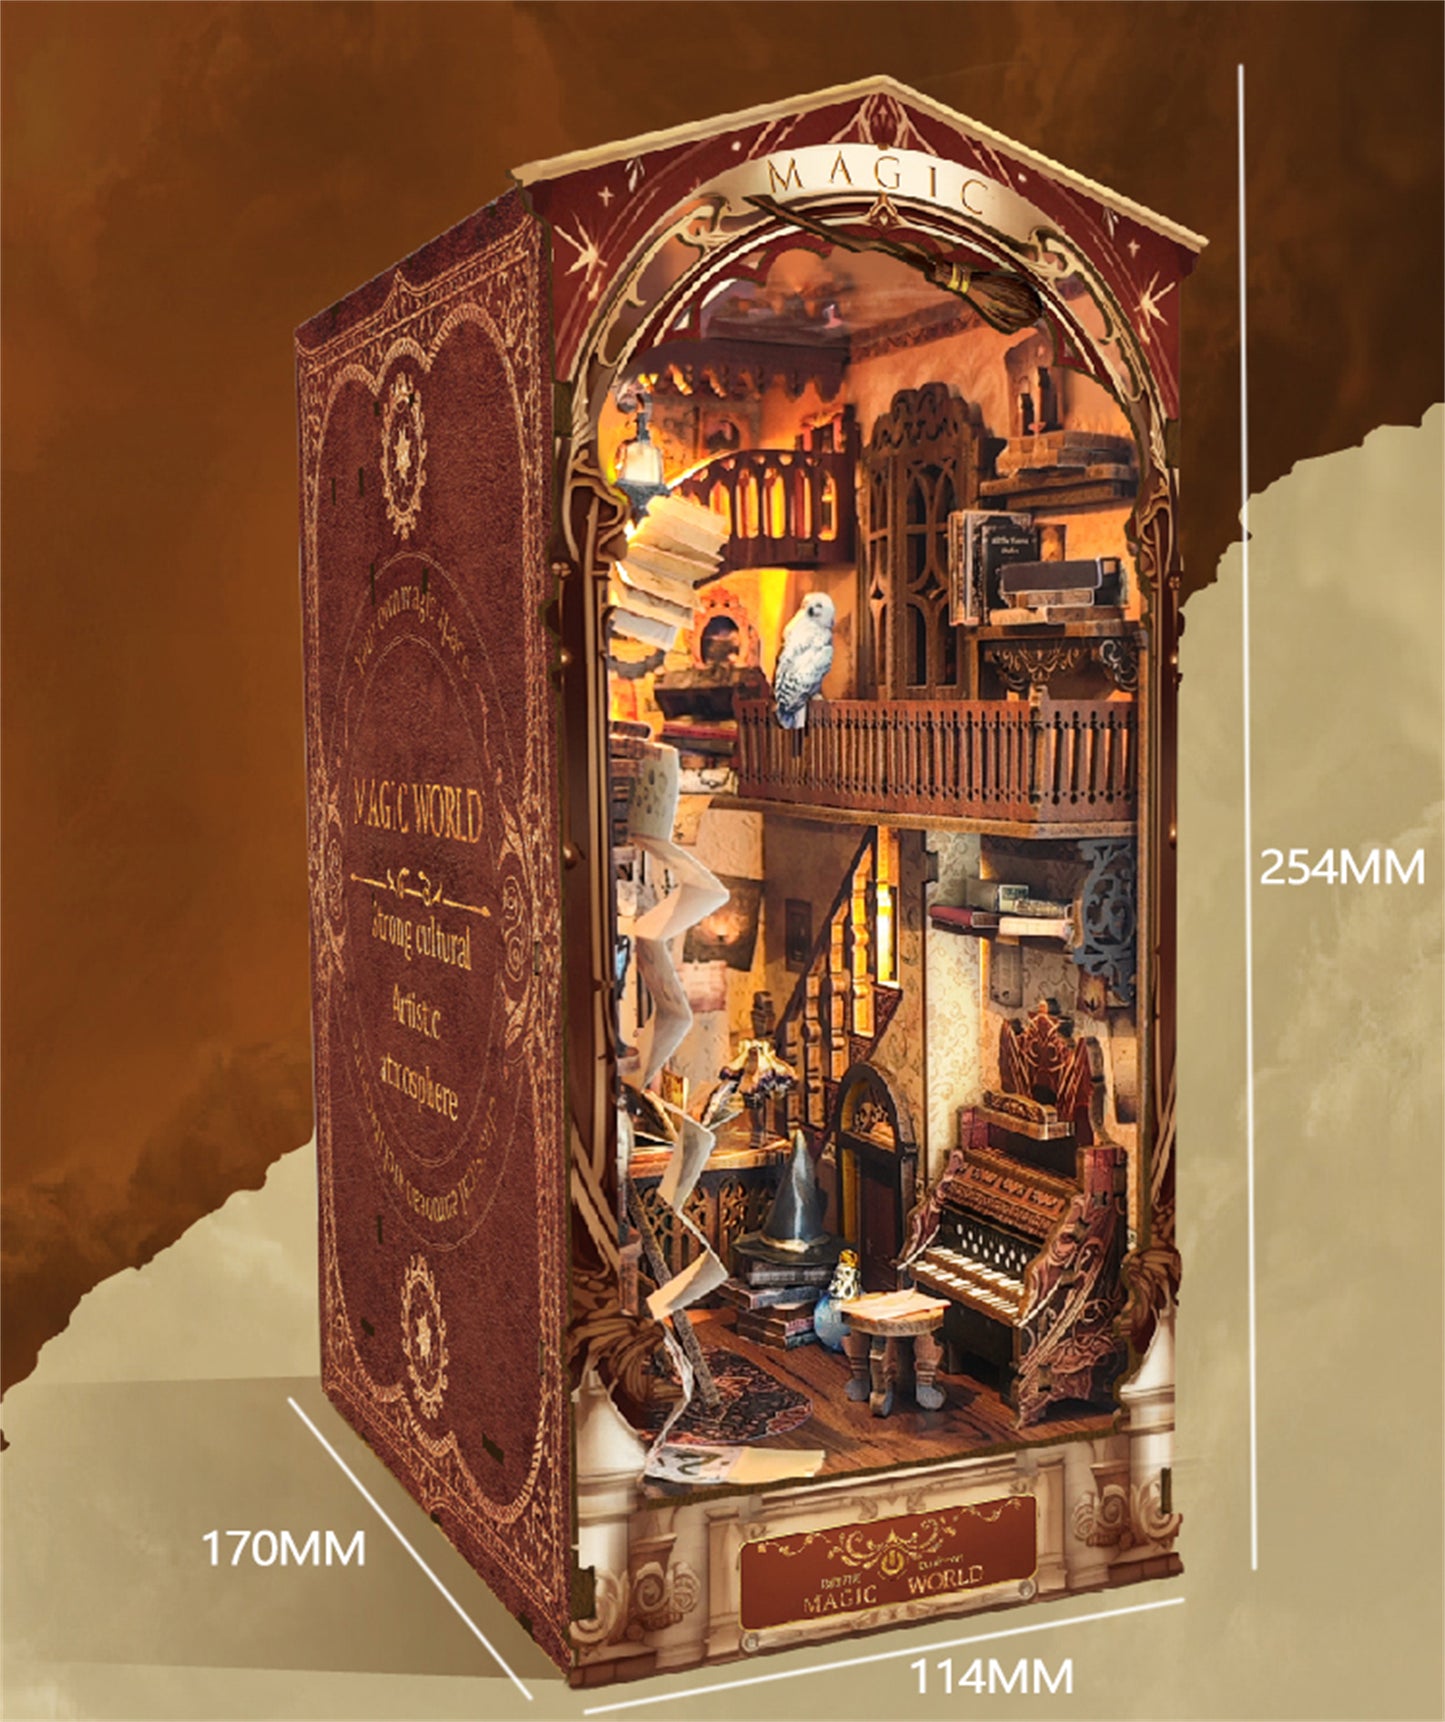 Magic World Bookends Hand-assembled Book Nook